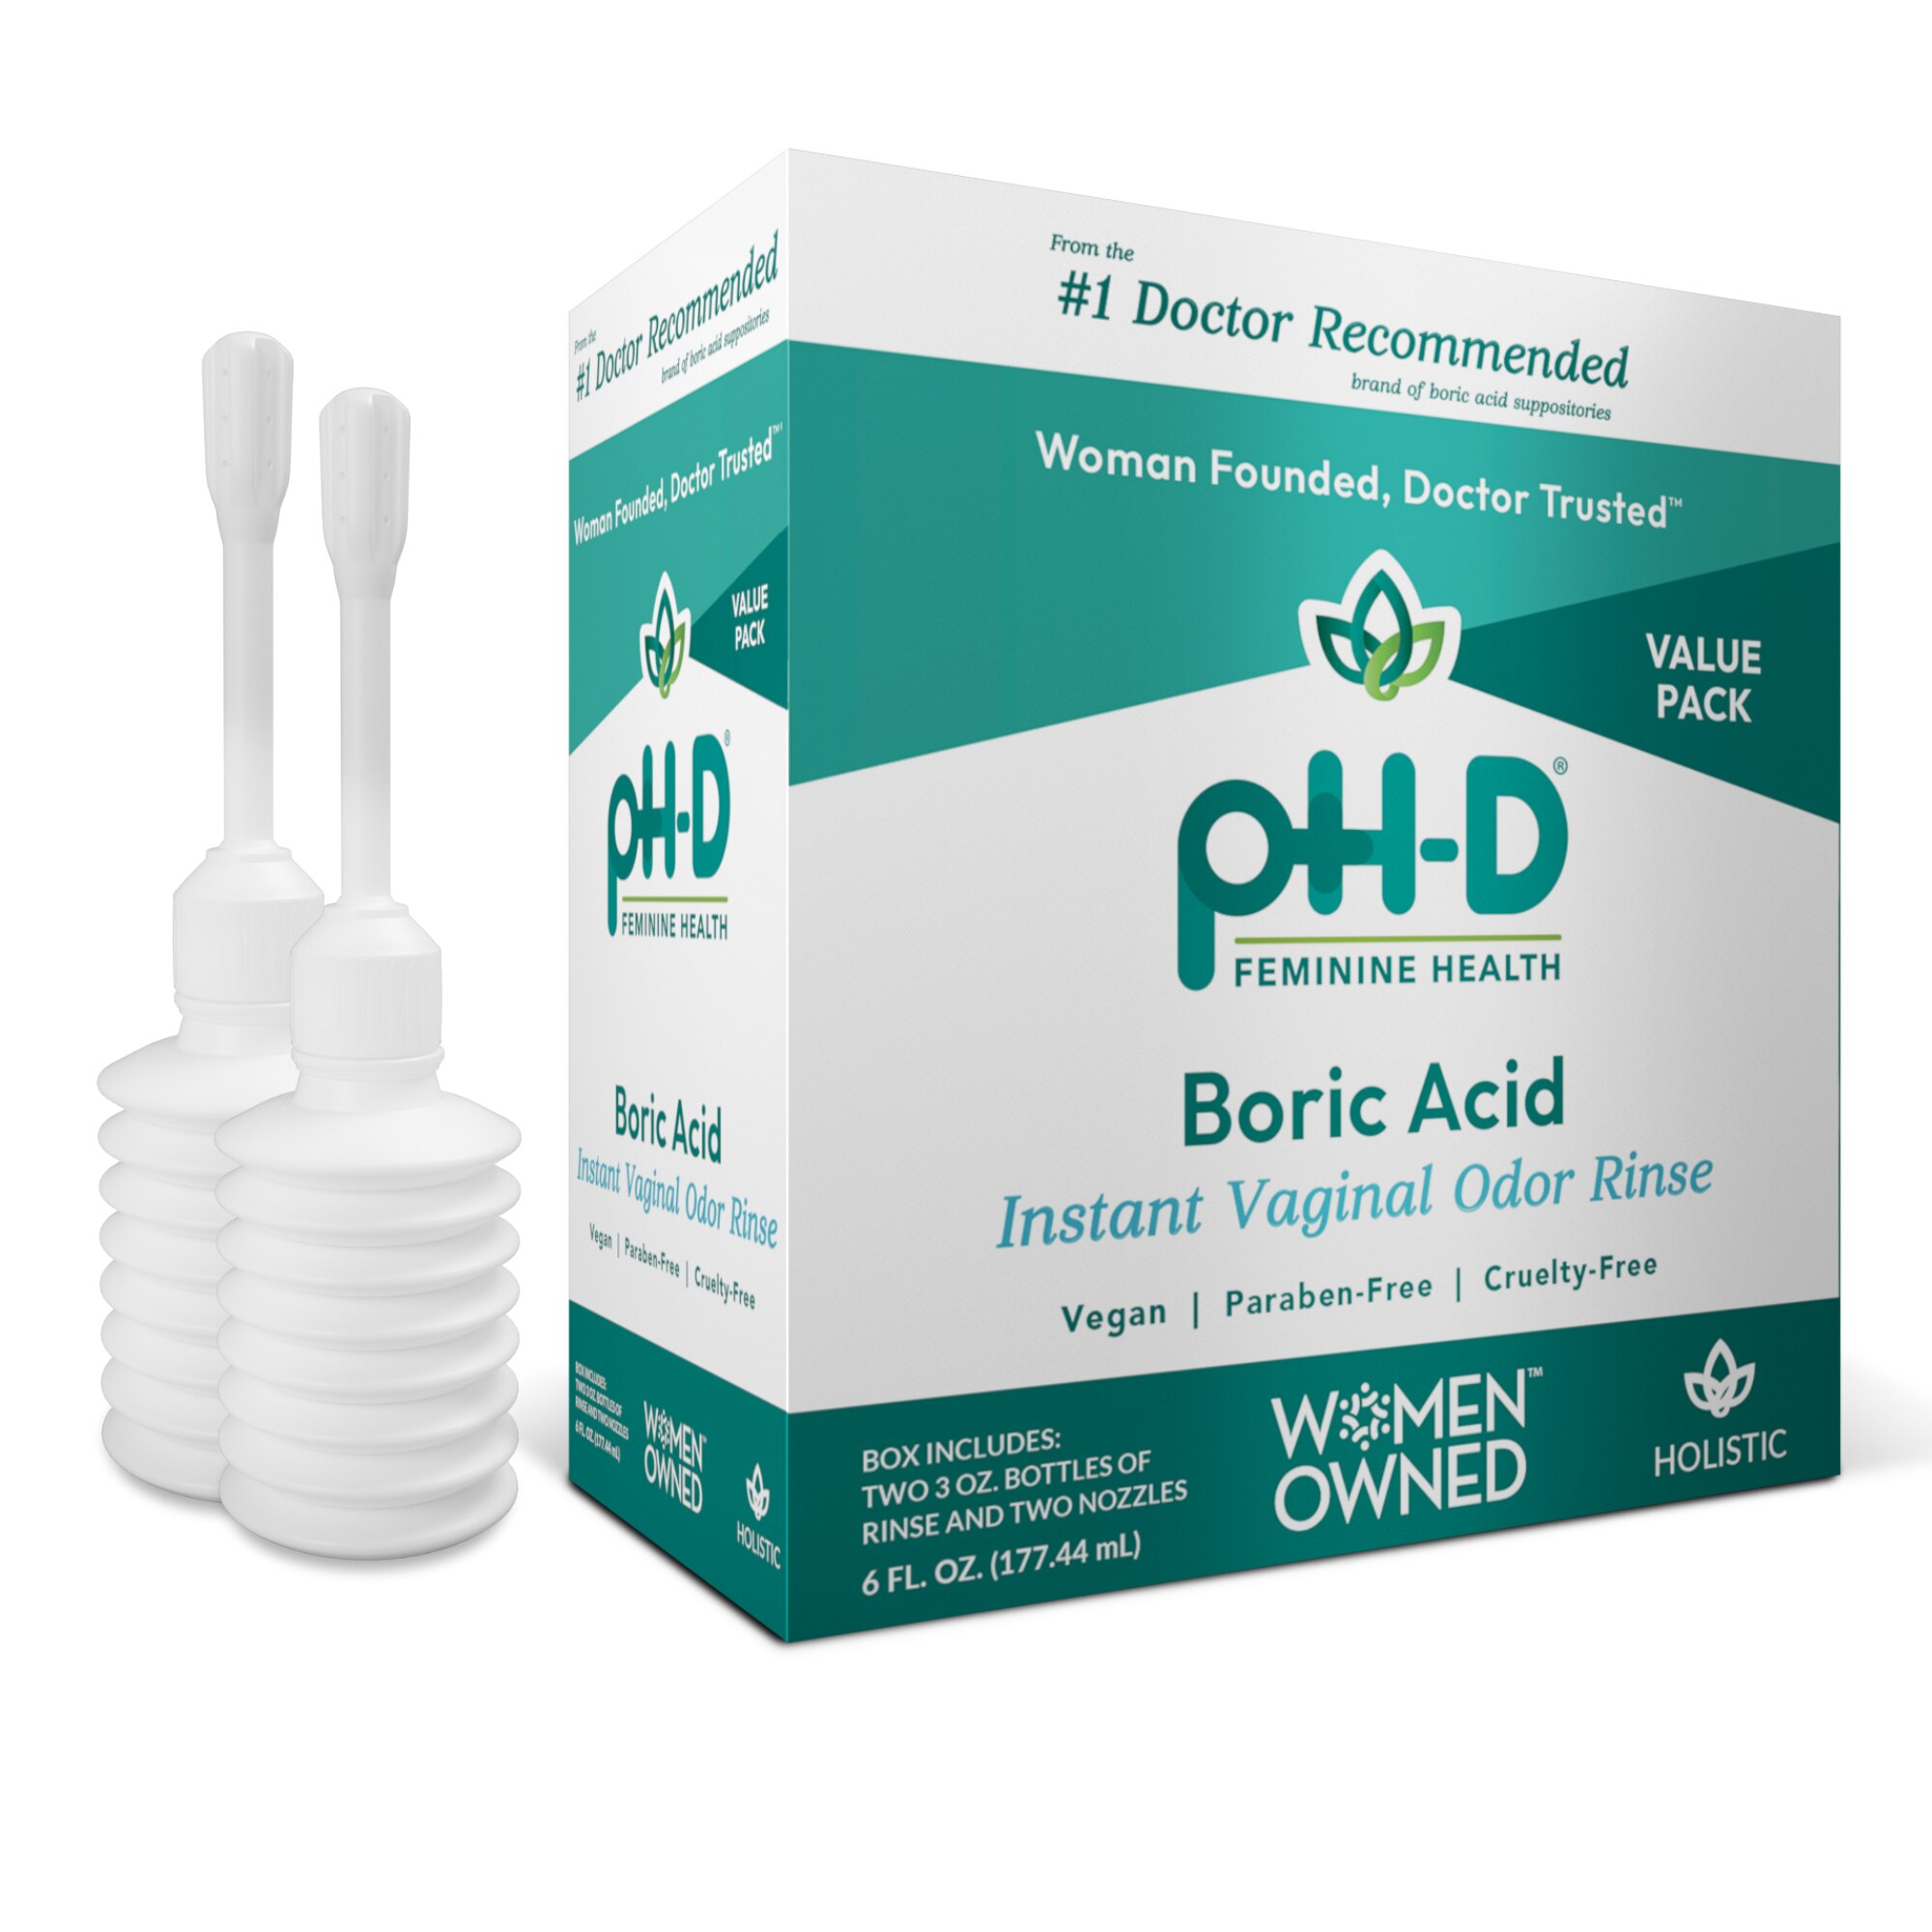 PH-D Boric Acid Instant Vaginal Odor Rinse, 3 OZ, 2 CT